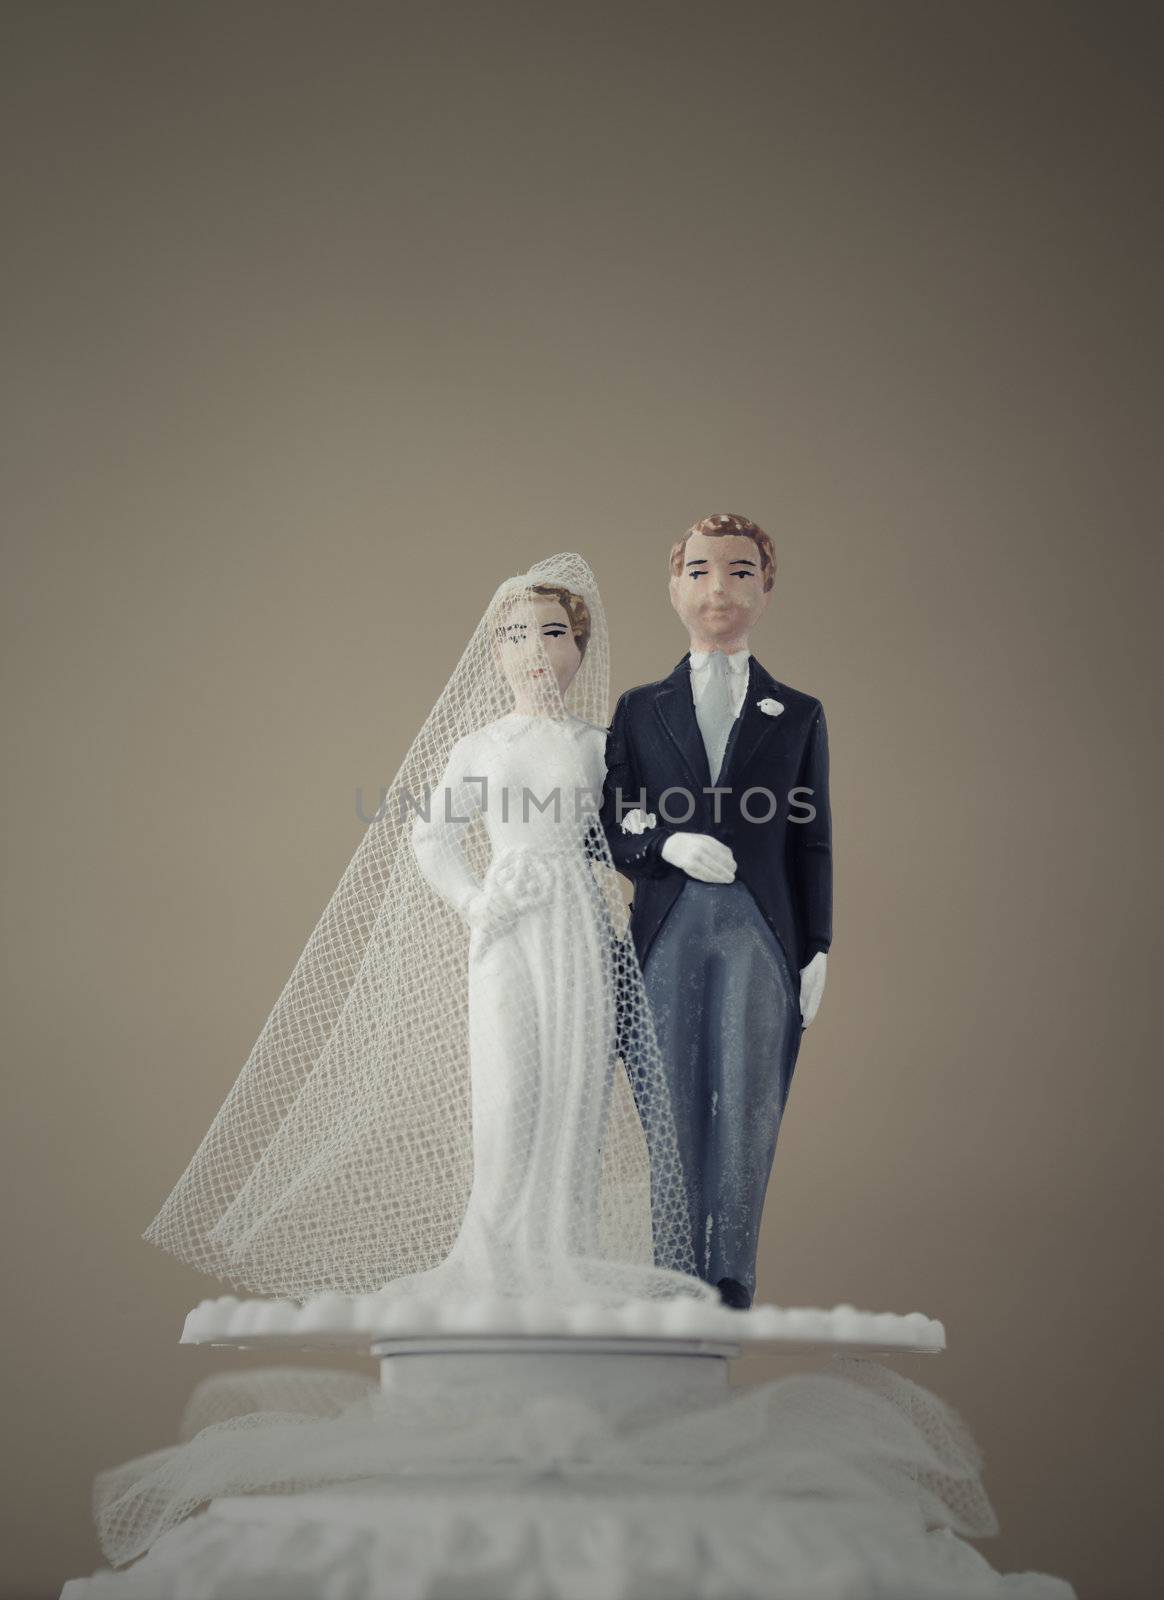 Wedding Cake Dolls by stokkete